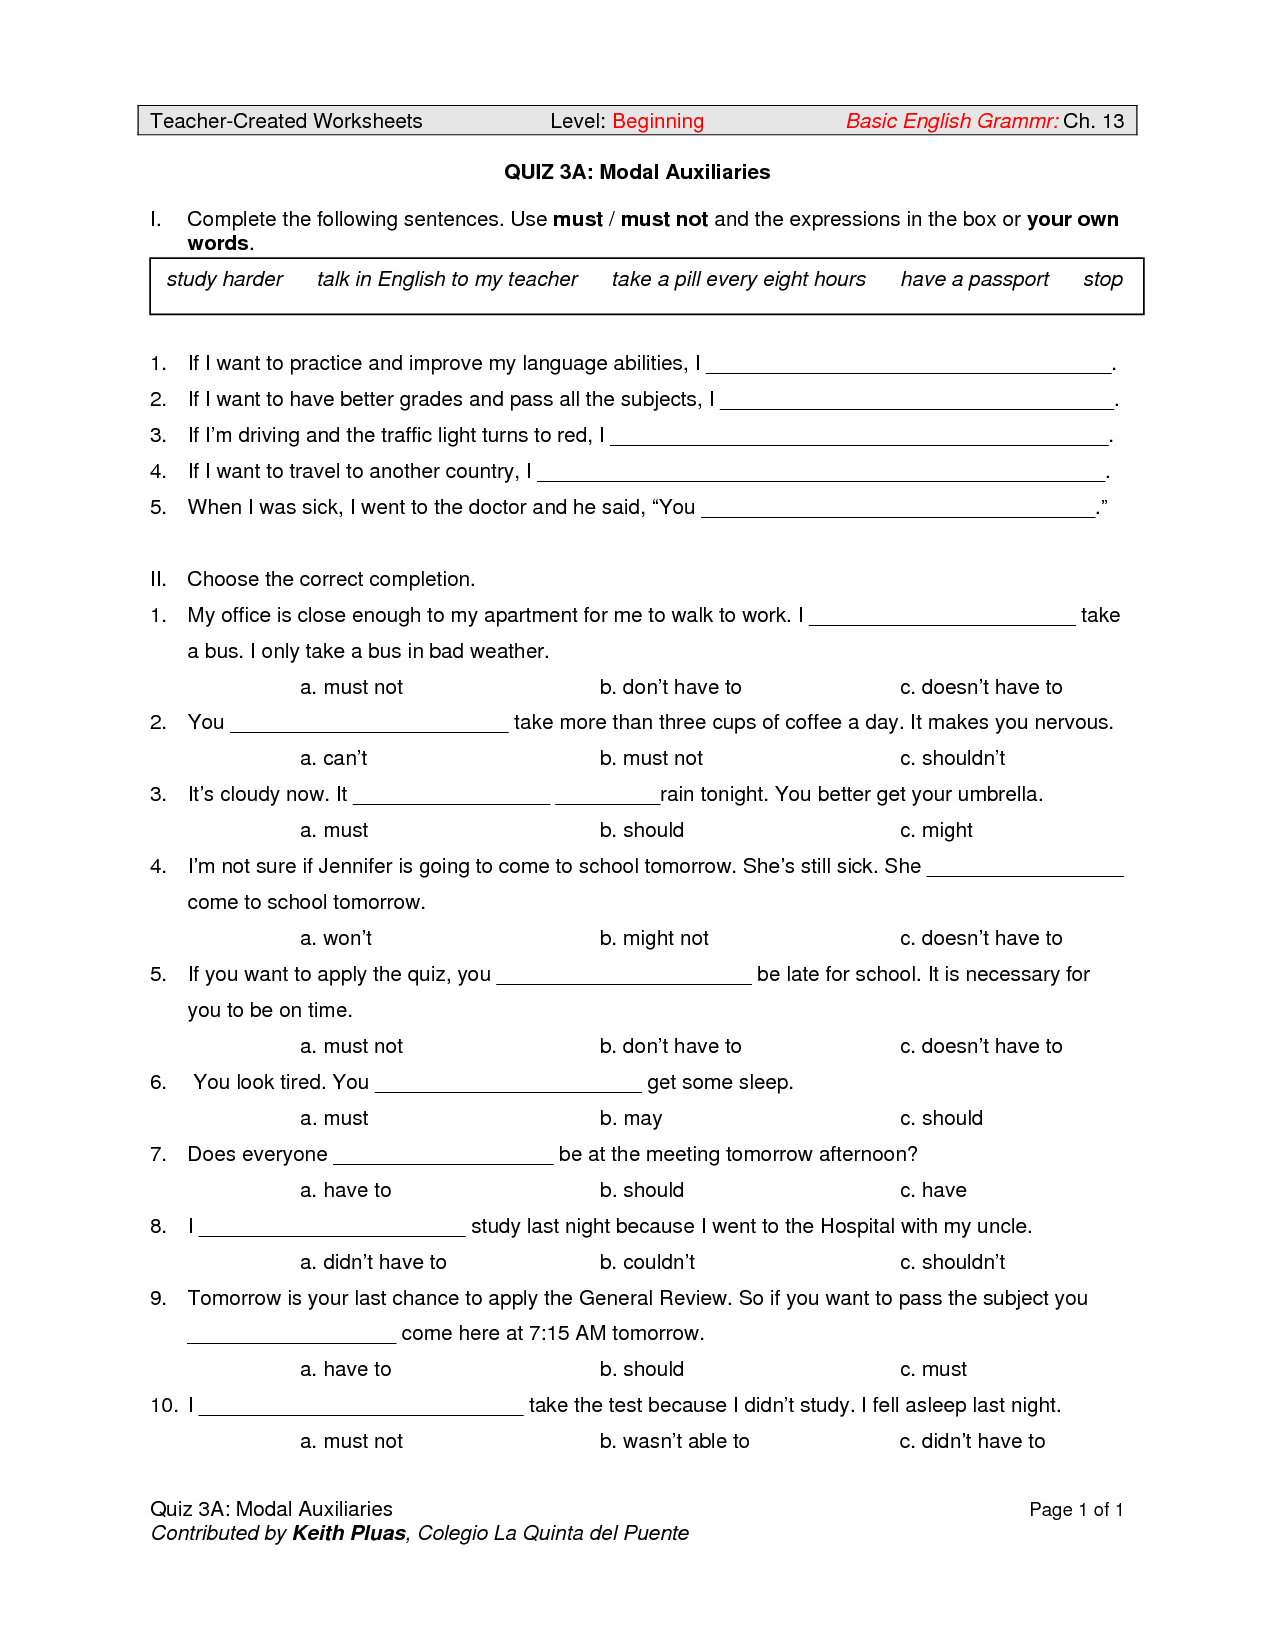 verb-worksheets-4th-grade-pdf-cinemas-93-db-excel